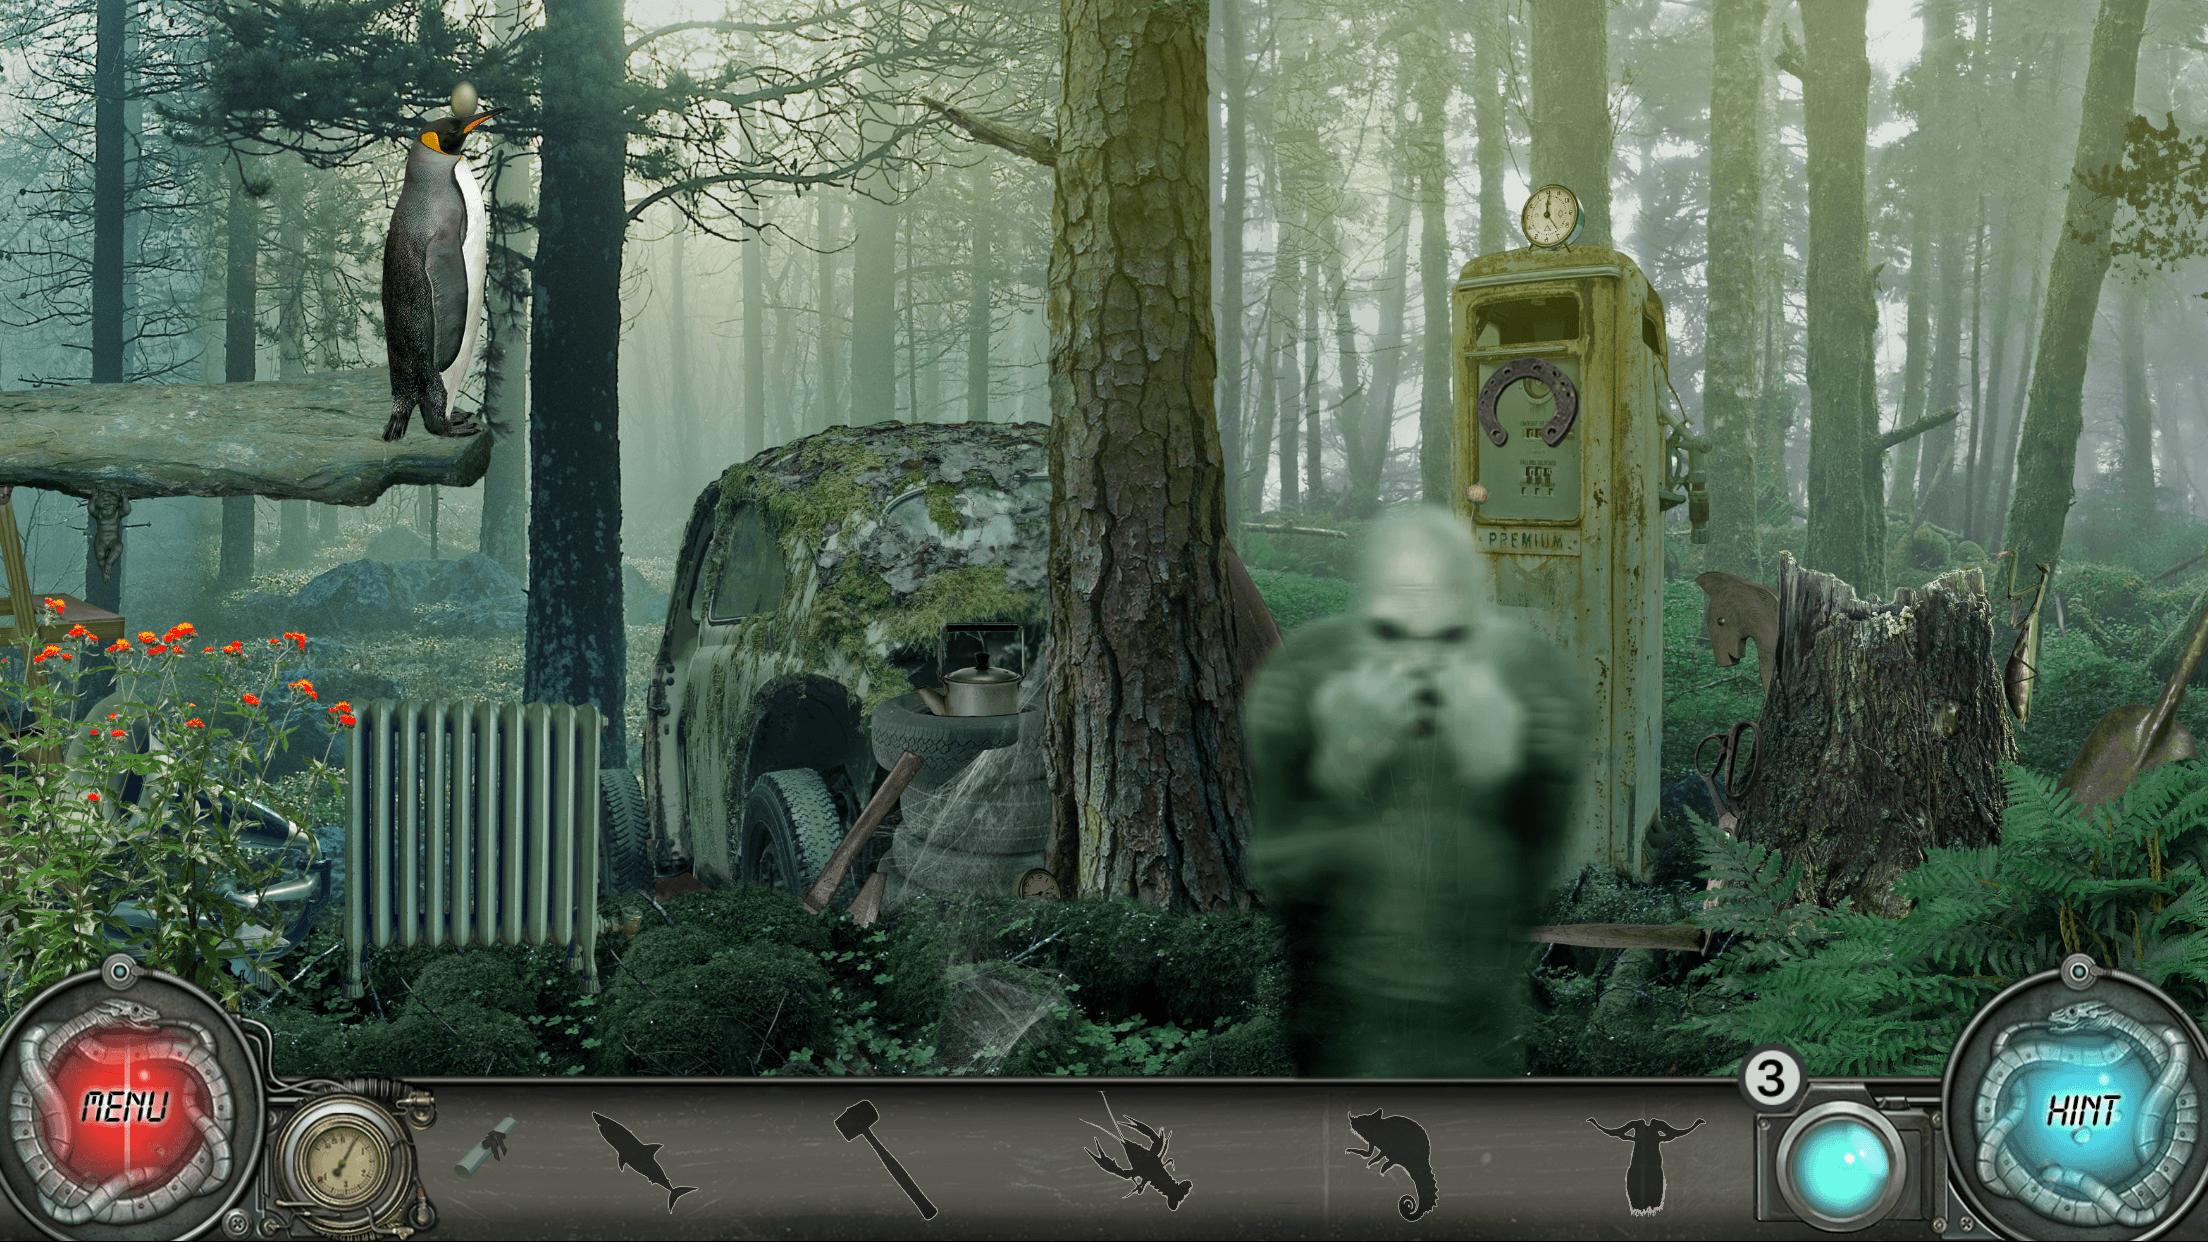 Time Trap 2 Mystery Hidden Object Adventure Games 1.0.025 Screenshot 19